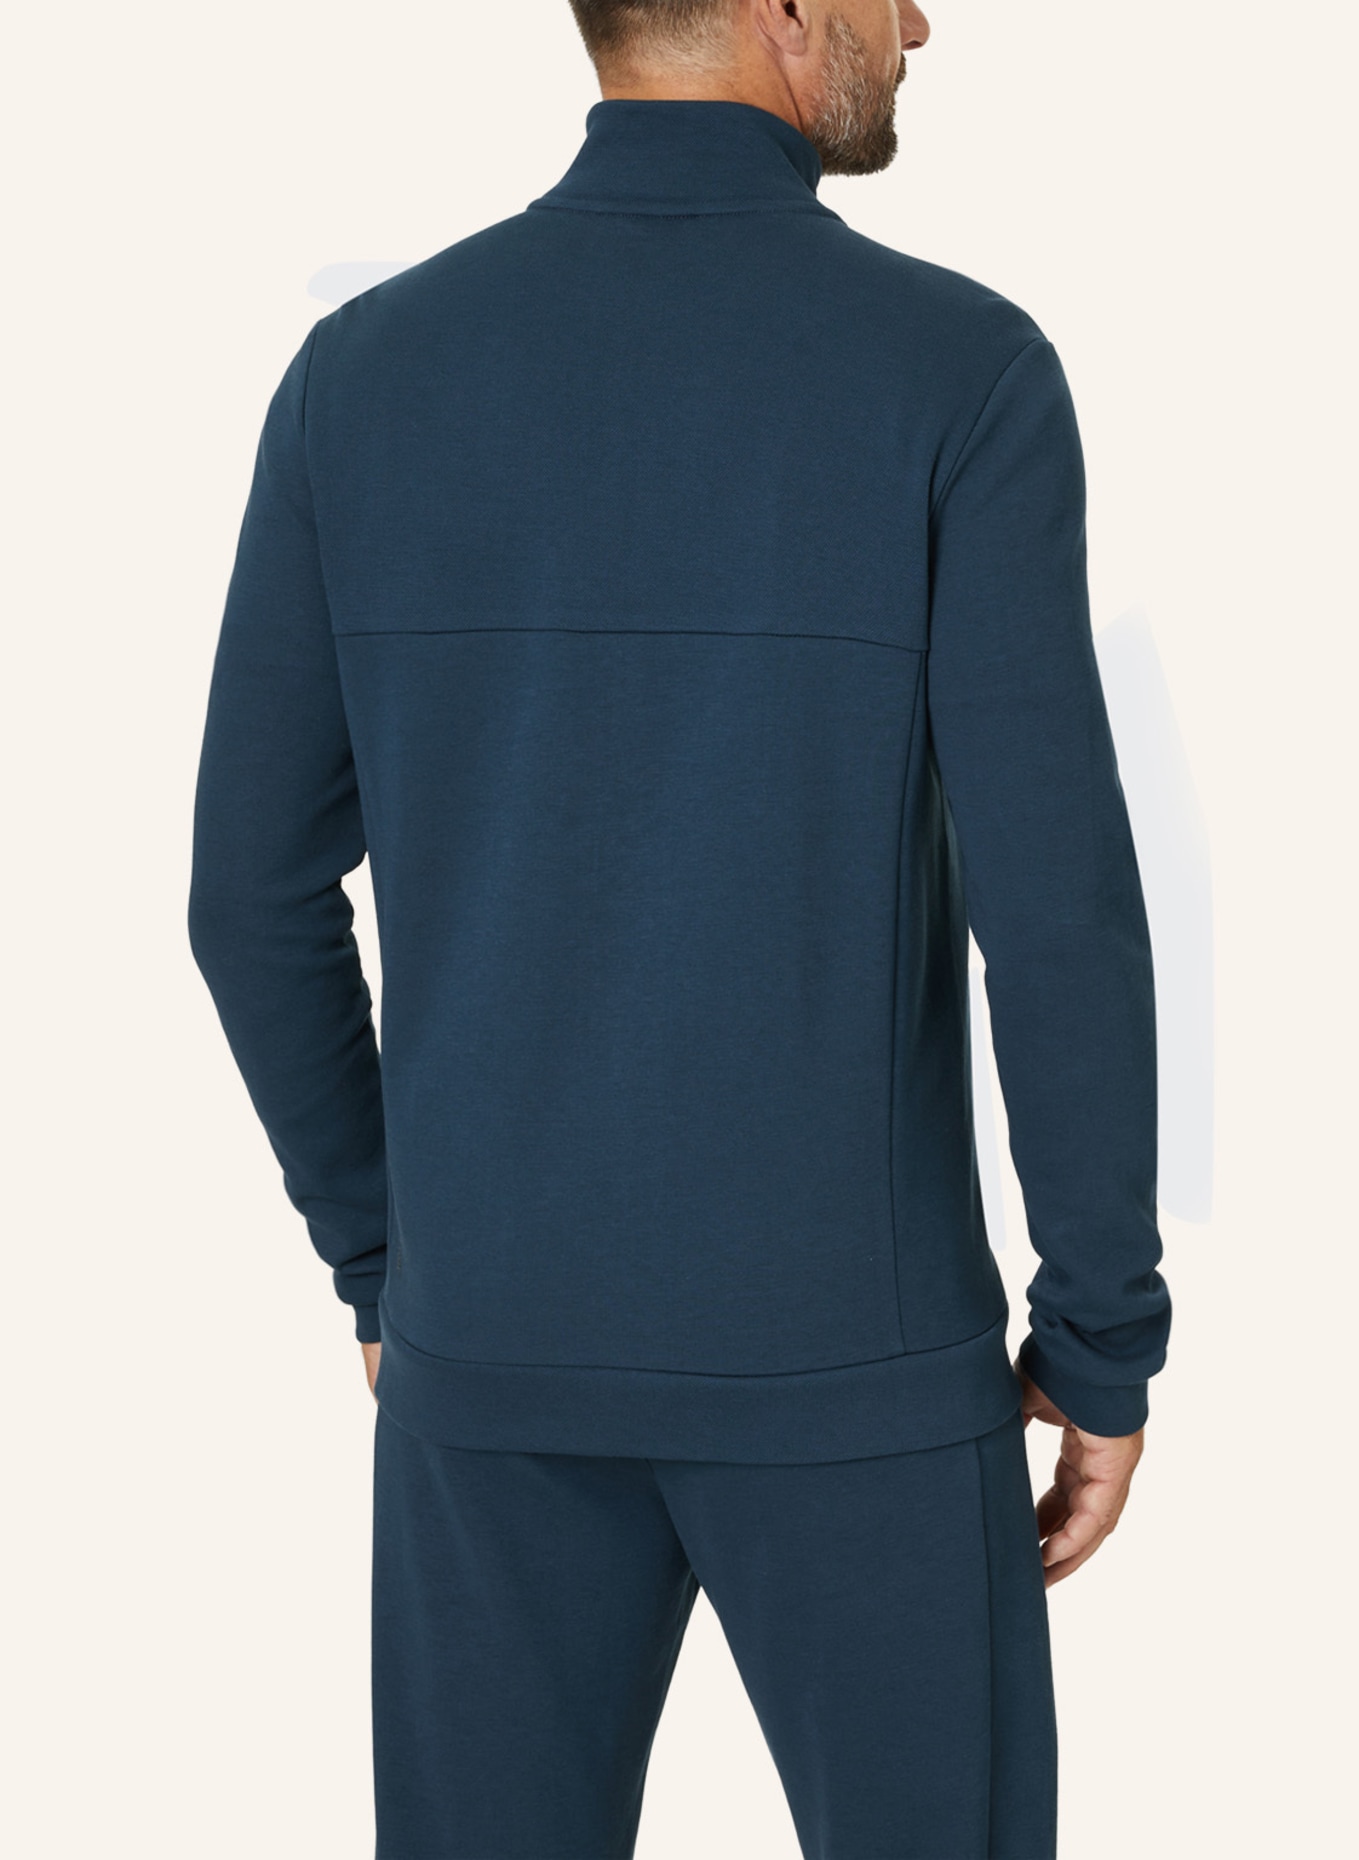 JOY sportswear Jacke MIGUEL, Farbe: BLAU (Bild 2)